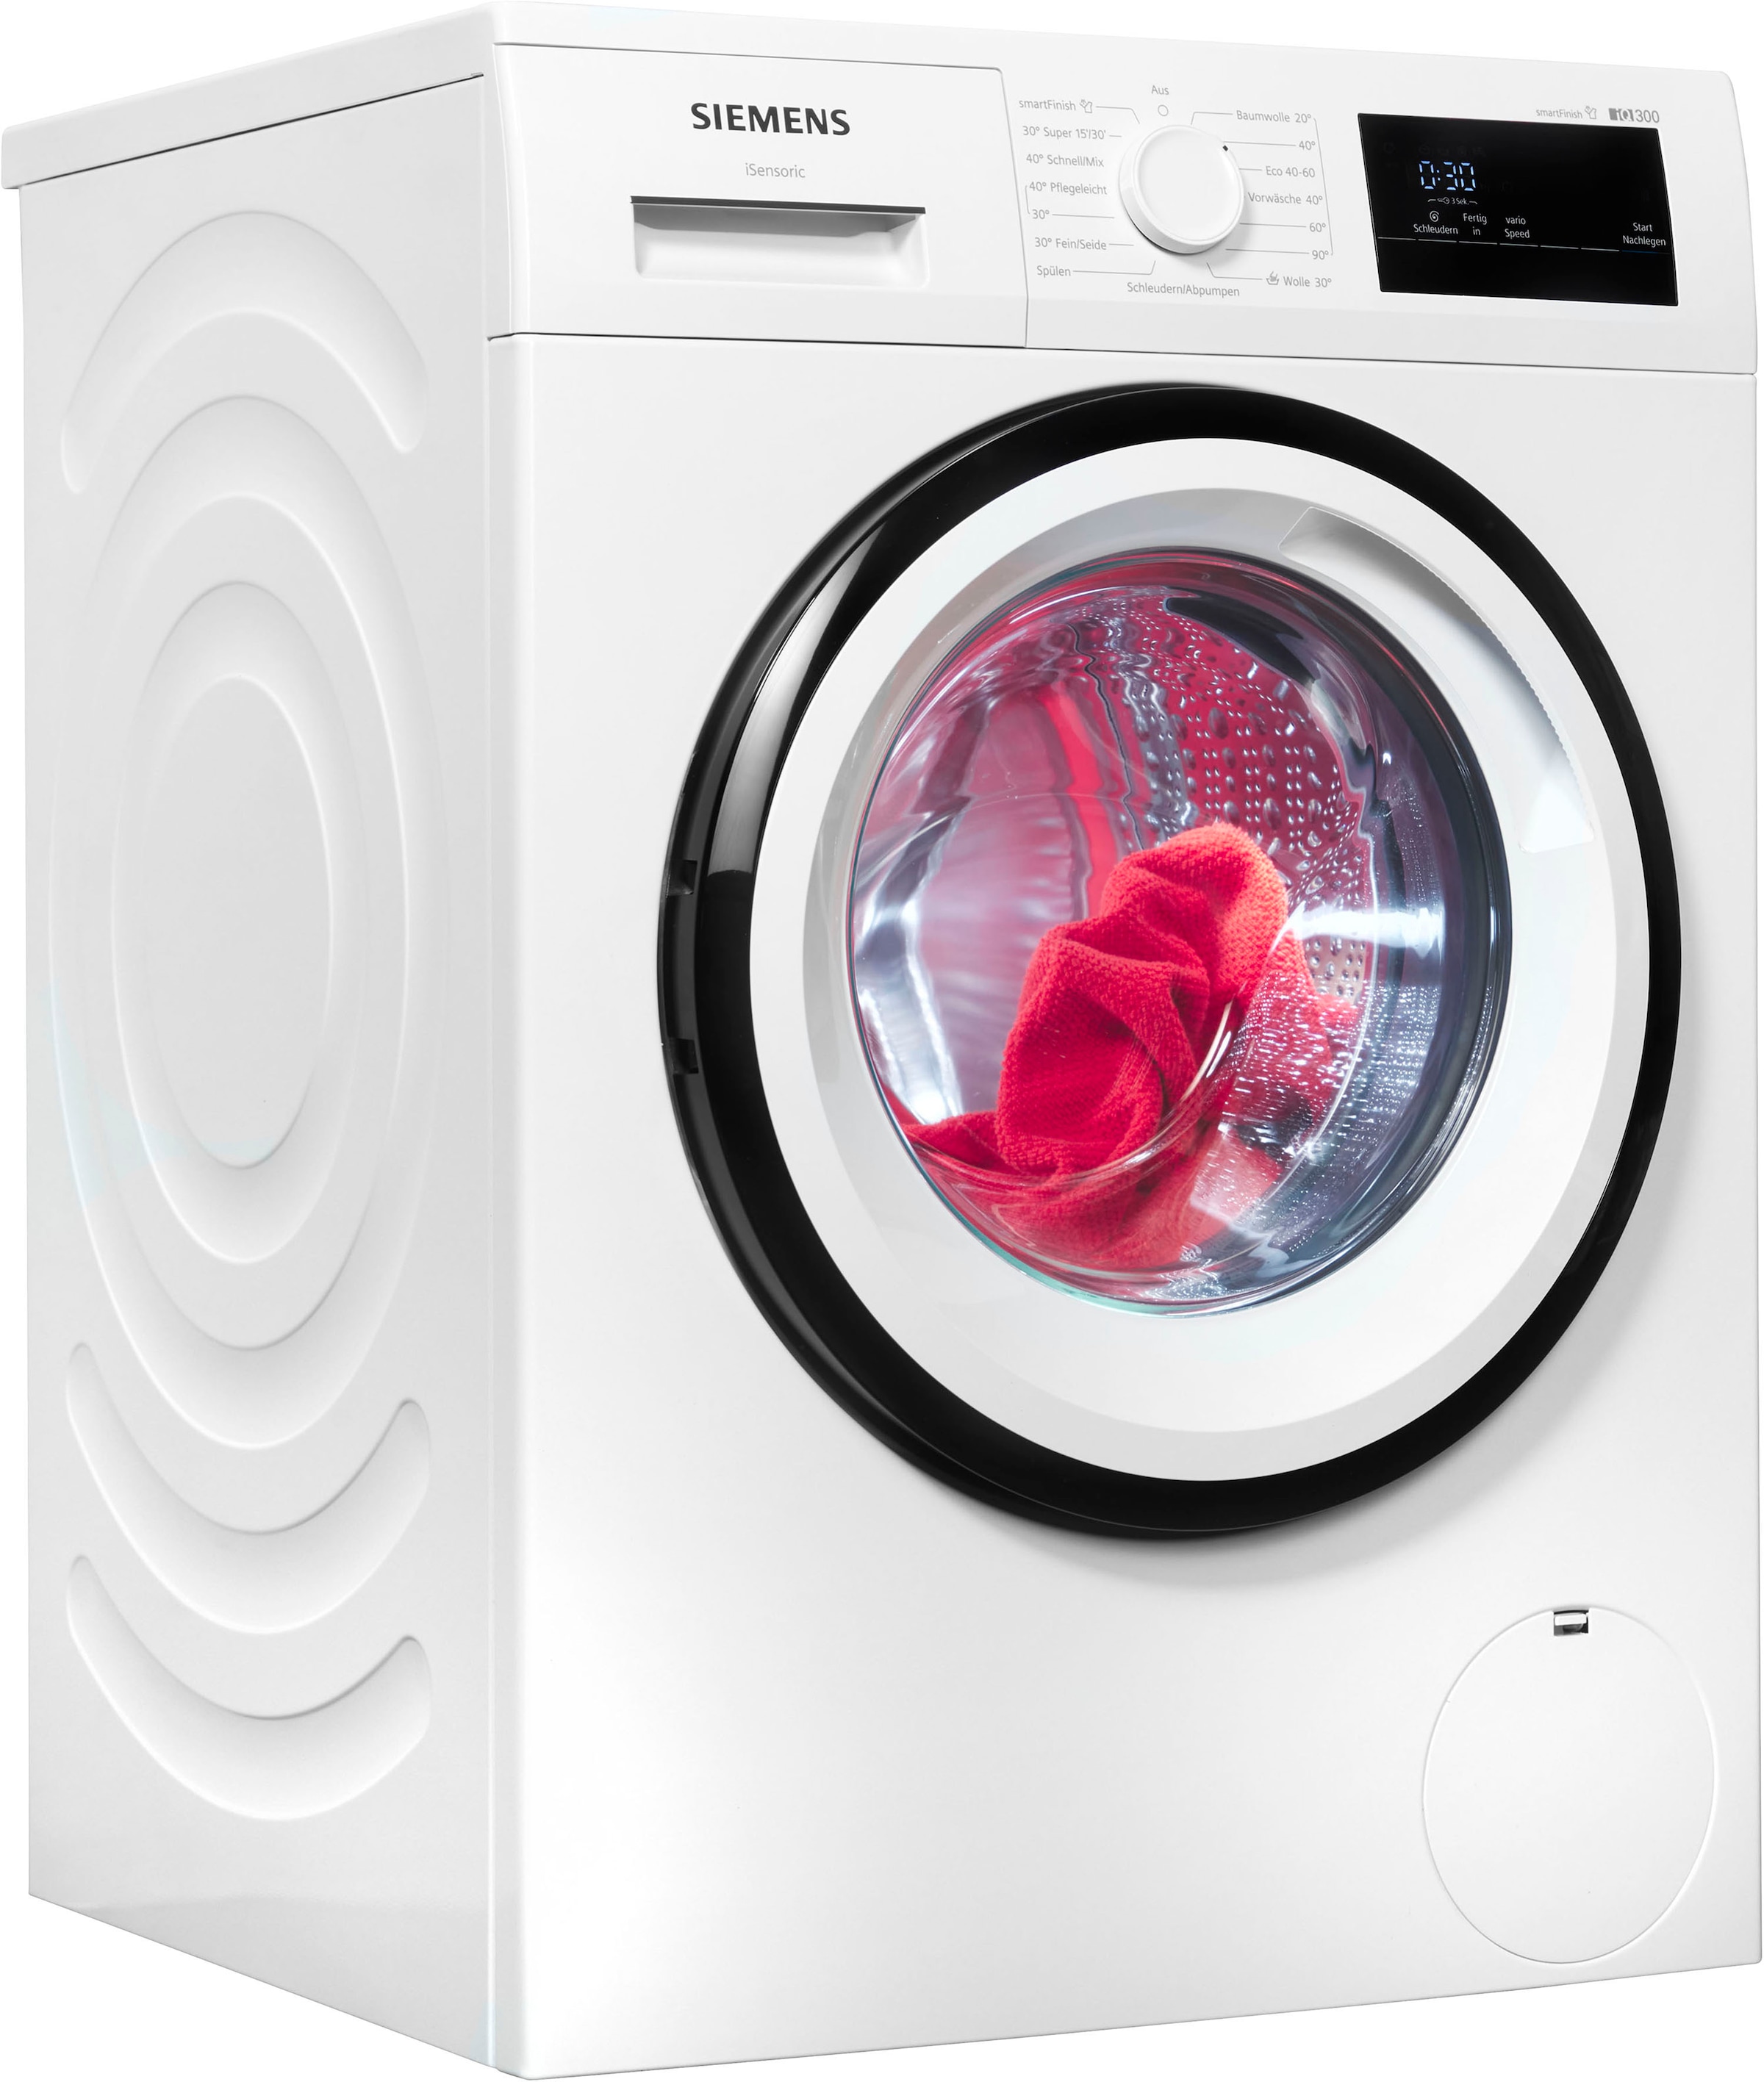 SIEMENS Waschmaschine 1400 XXL Dampf Jahren WM14N0A4, mit – 3 U/min, kg, sämtliche iQ300, 8 glättet dank smartFinish Knitterfalten »WM14N0A4«, Garantie